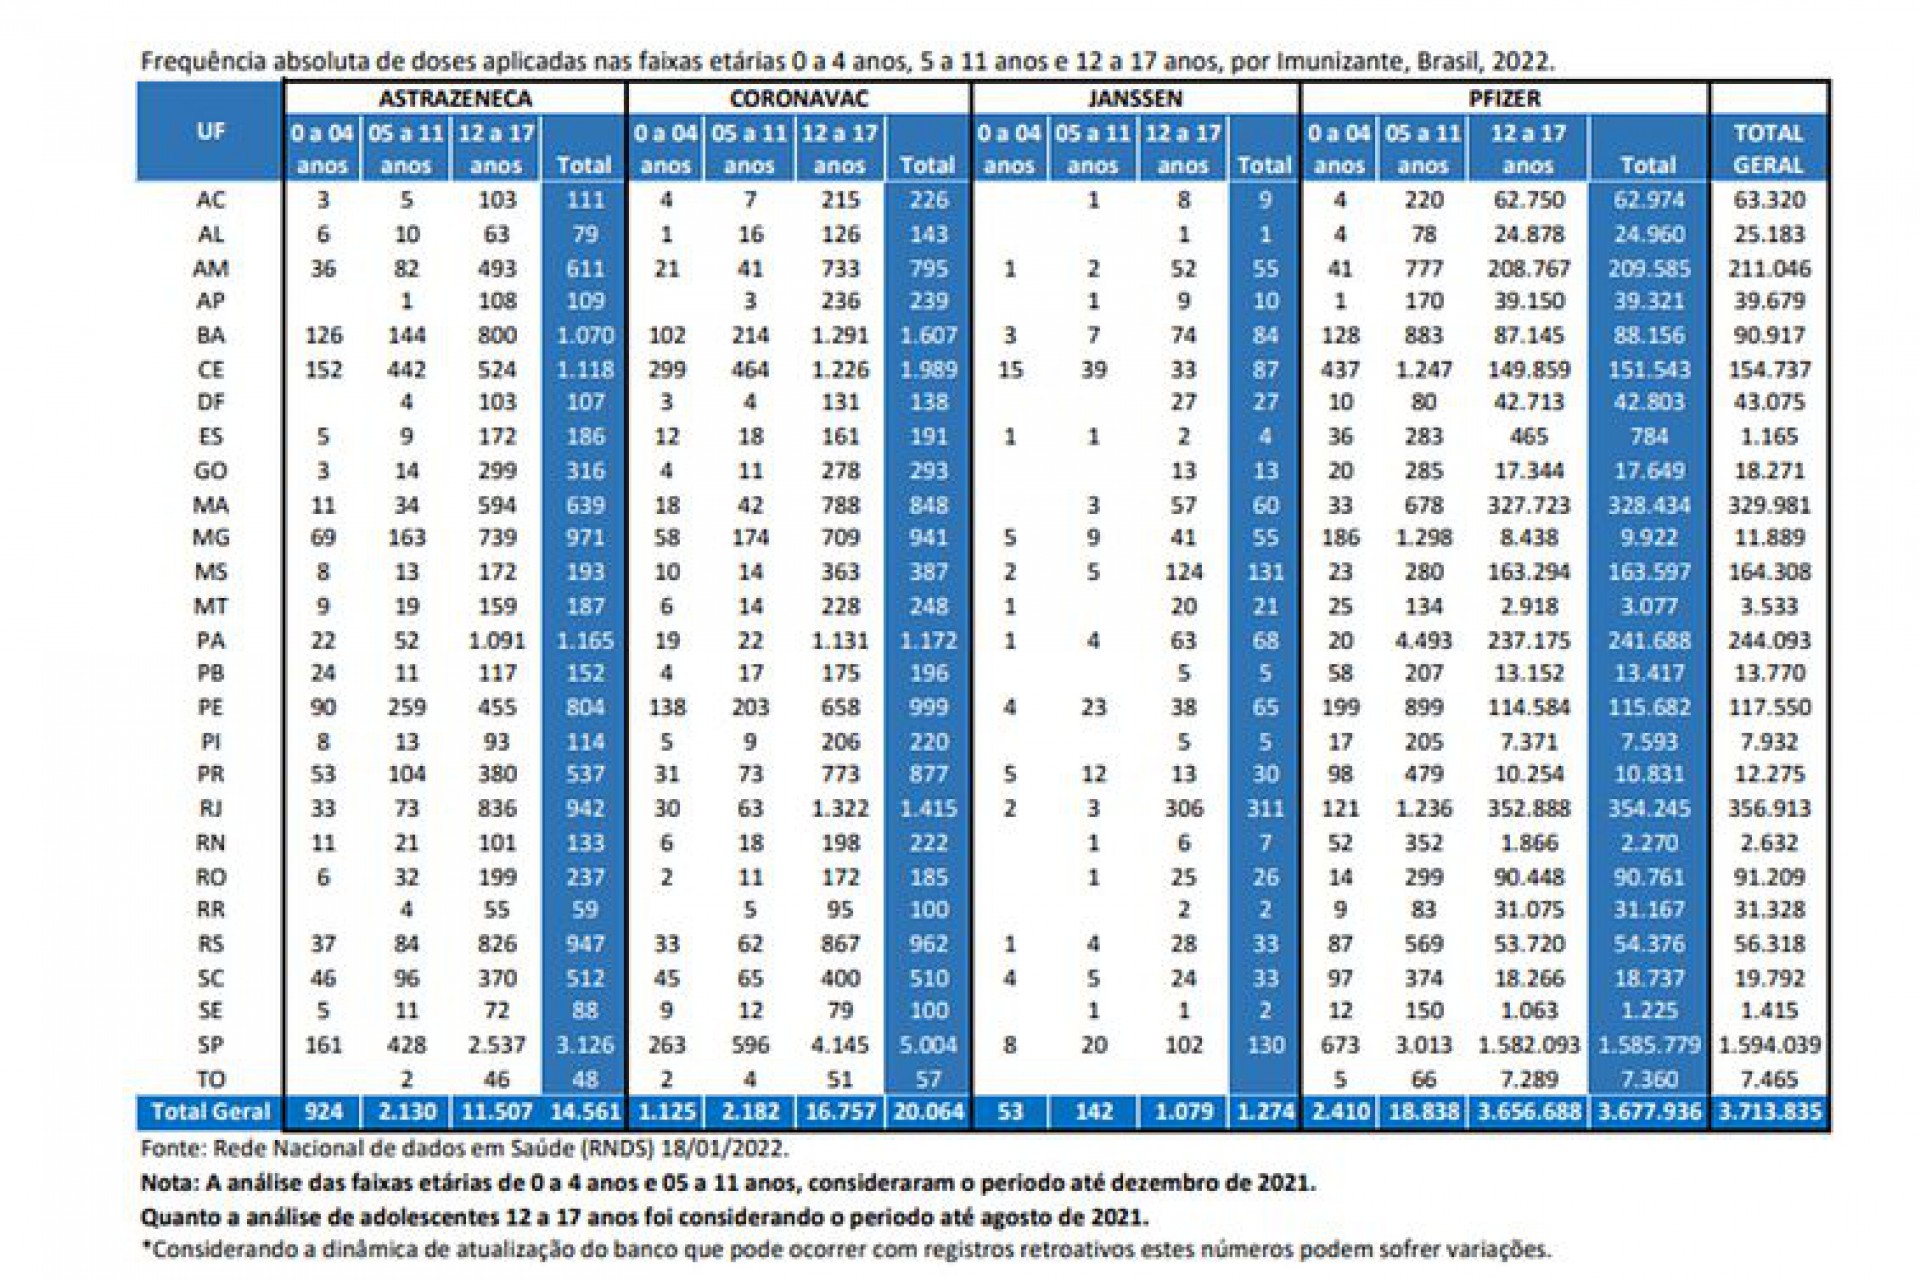 Tabela da Advocacia-Geral da União mostra que milhares de crianças teriam tomado doses de vacina contra a Covid-19 de forma irregular